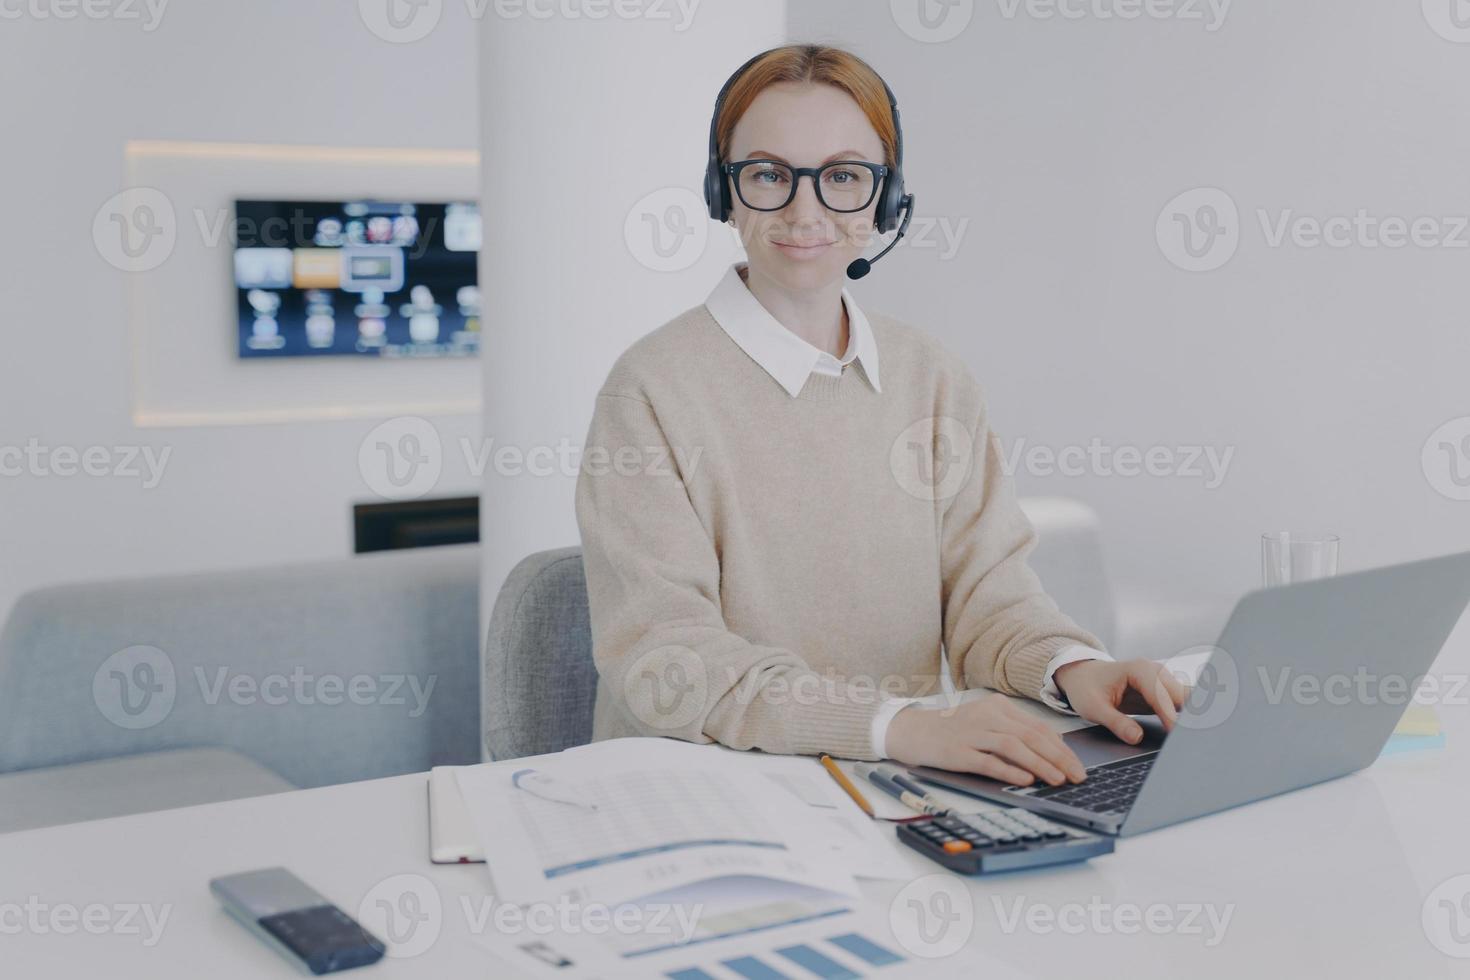 administrador del sistema en el lugar de trabajo. mujer joven en auriculares es consultora del centro de llamadas. foto